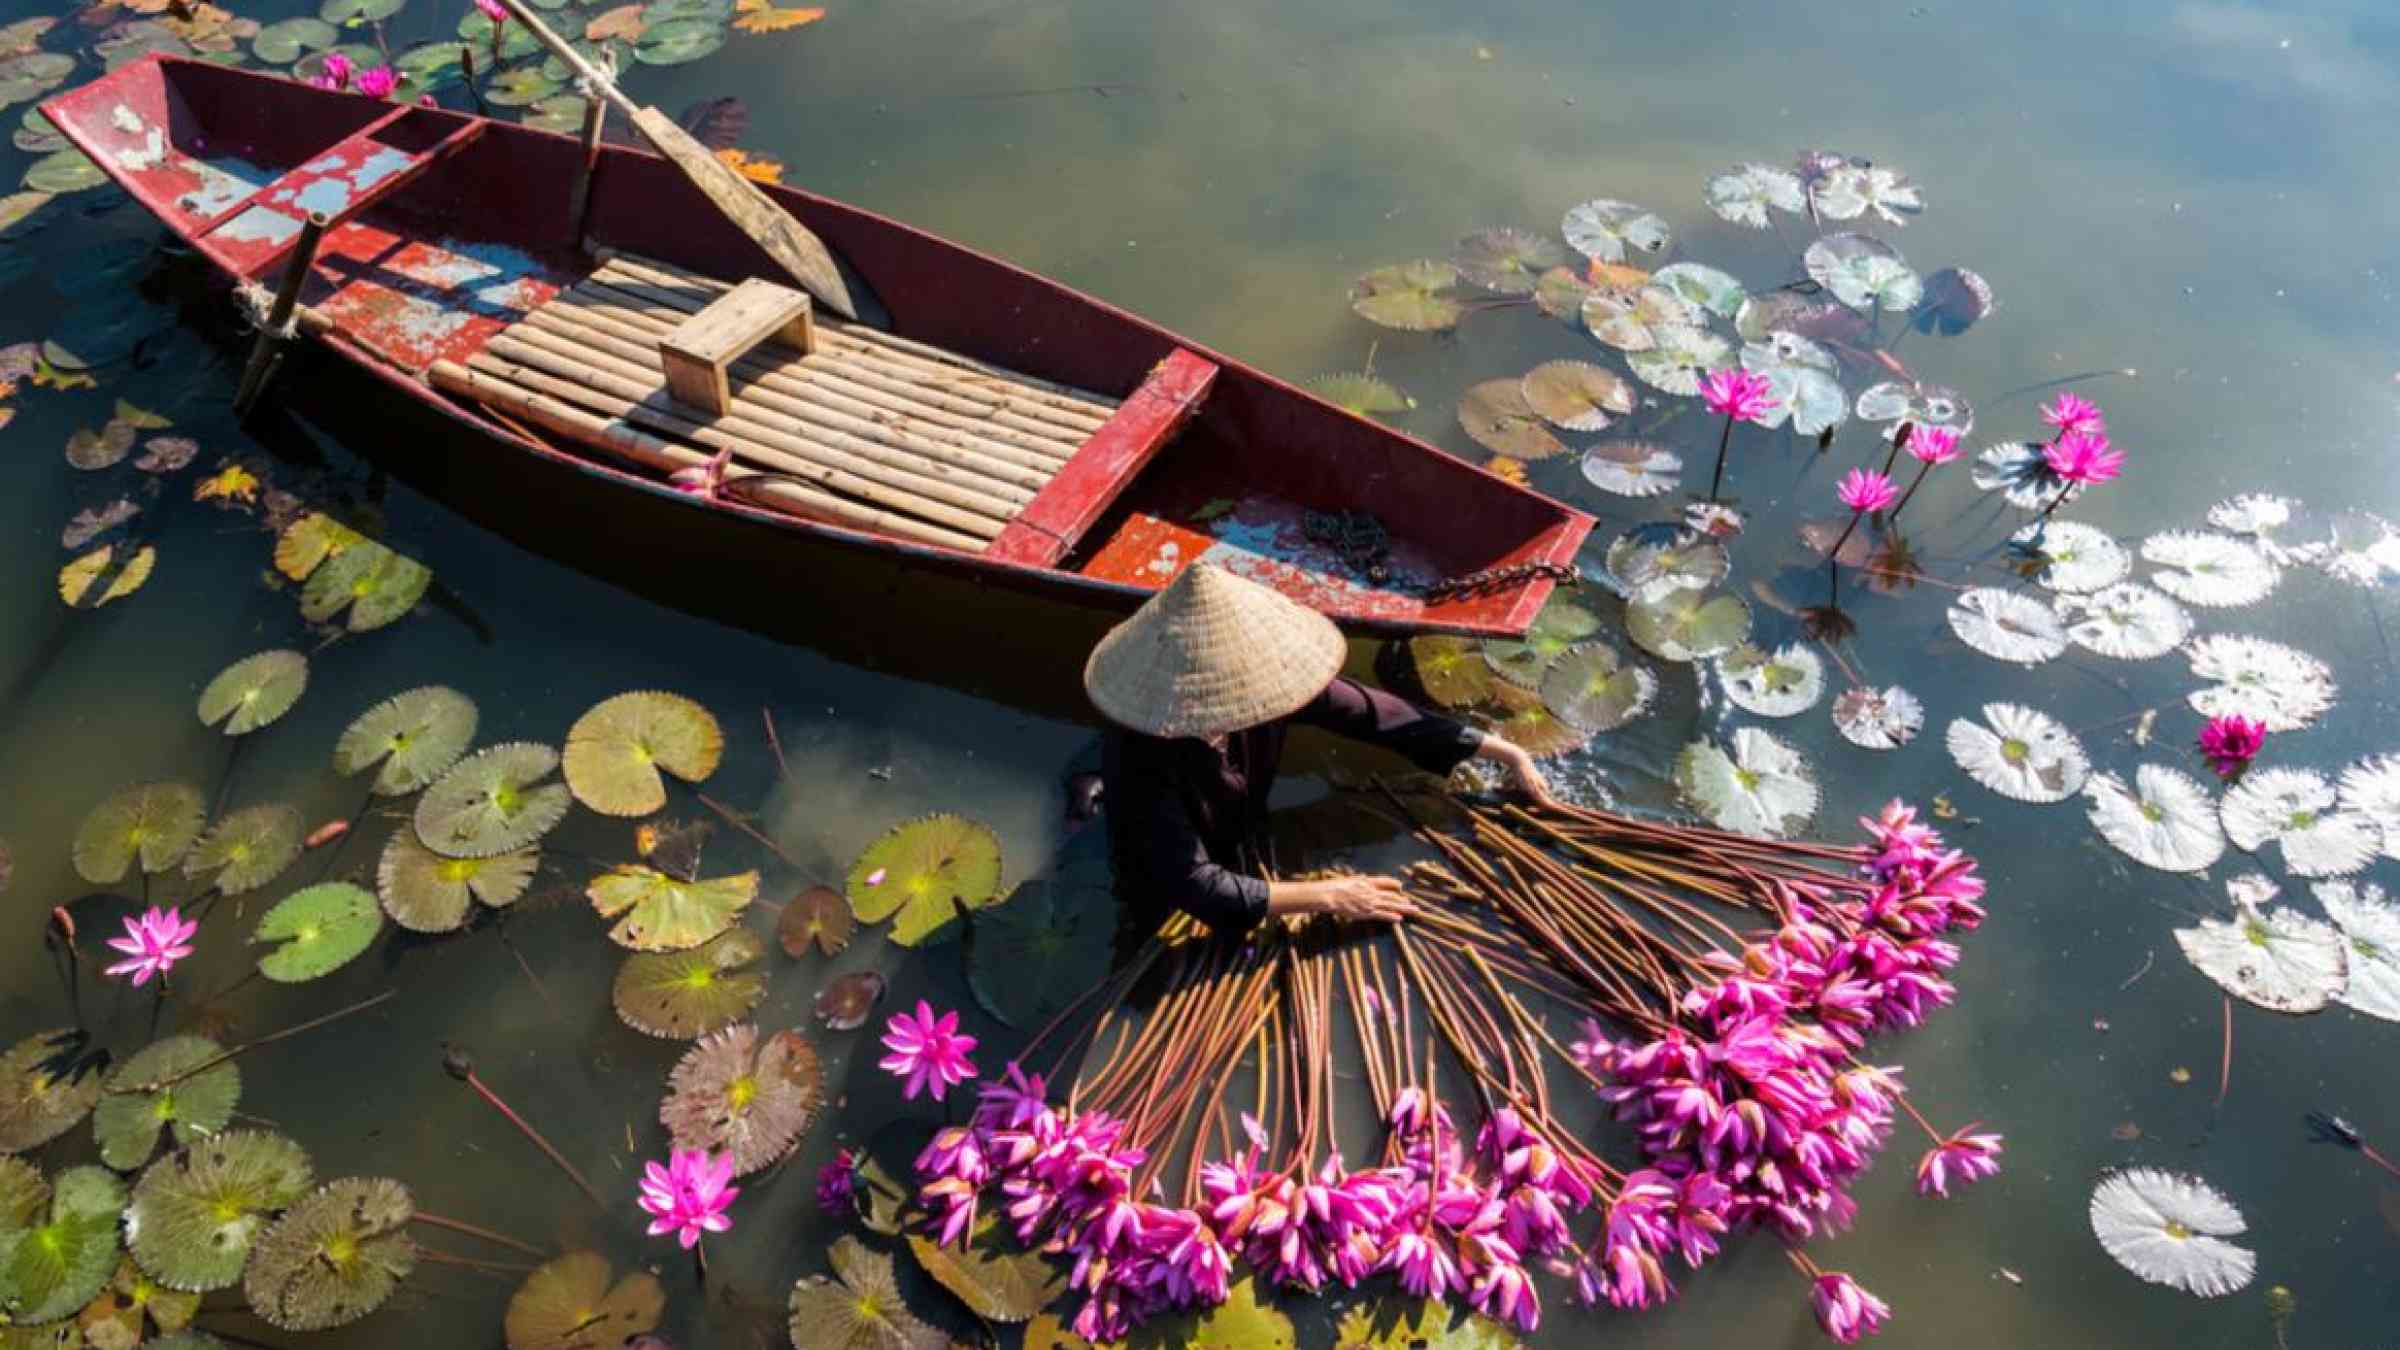 Vietnam Stock Images/Shutterstock